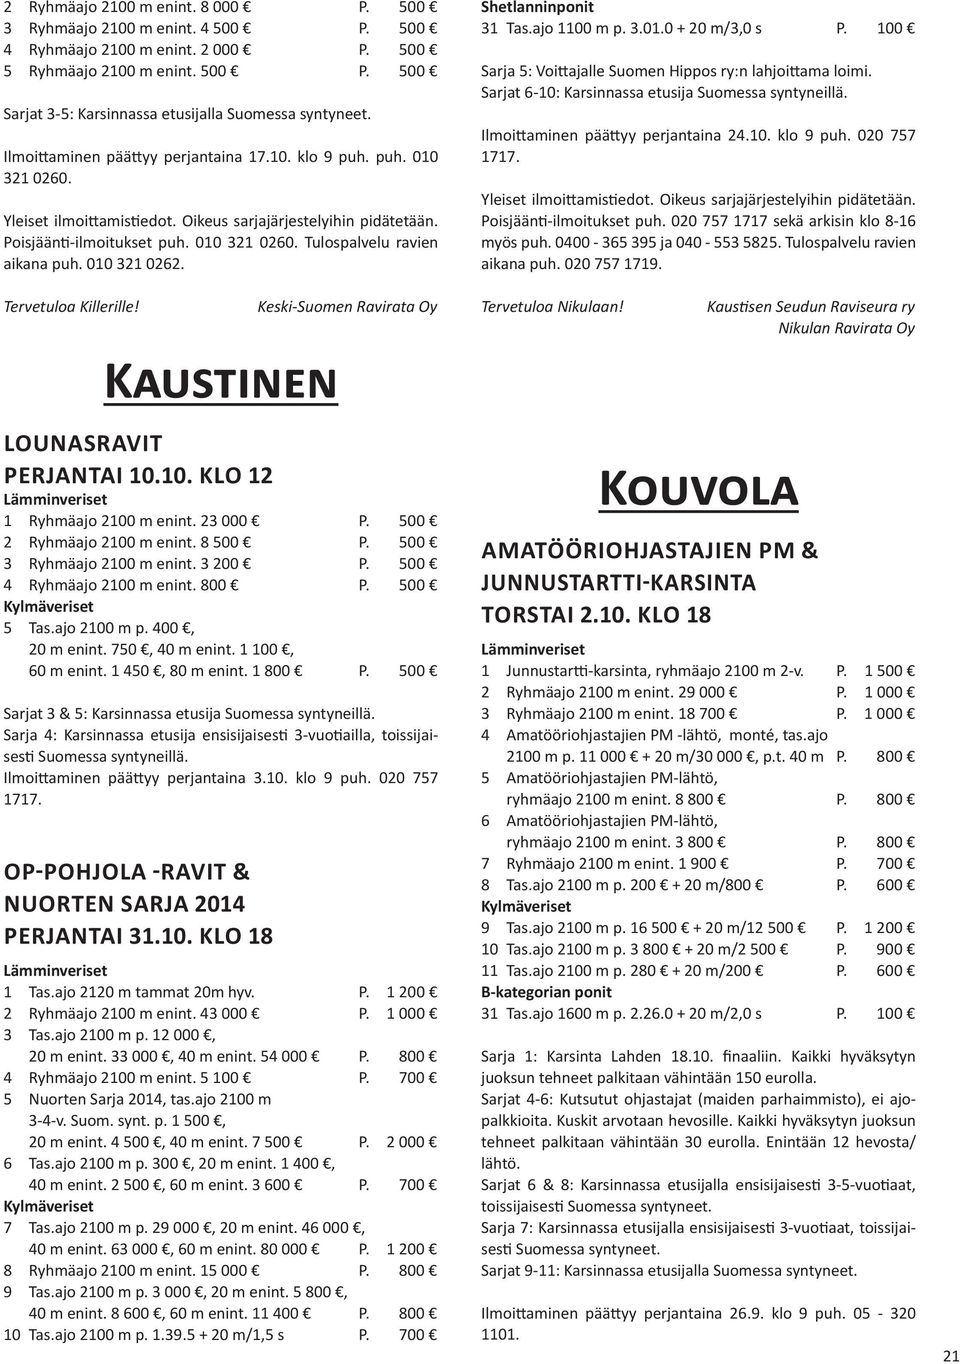 Kaustinen Keski-Suomen Ravirata Oy LOUNASRAVIT PERJANTAI 10.10. KLO 12 1 Ryhmäajo 2100 m enint. 23 000 P. 500 2 Ryhmäajo 2100 m enint. 8 500 P. 500 3 Ryhmäajo 2100 m enint. 3 200 P.